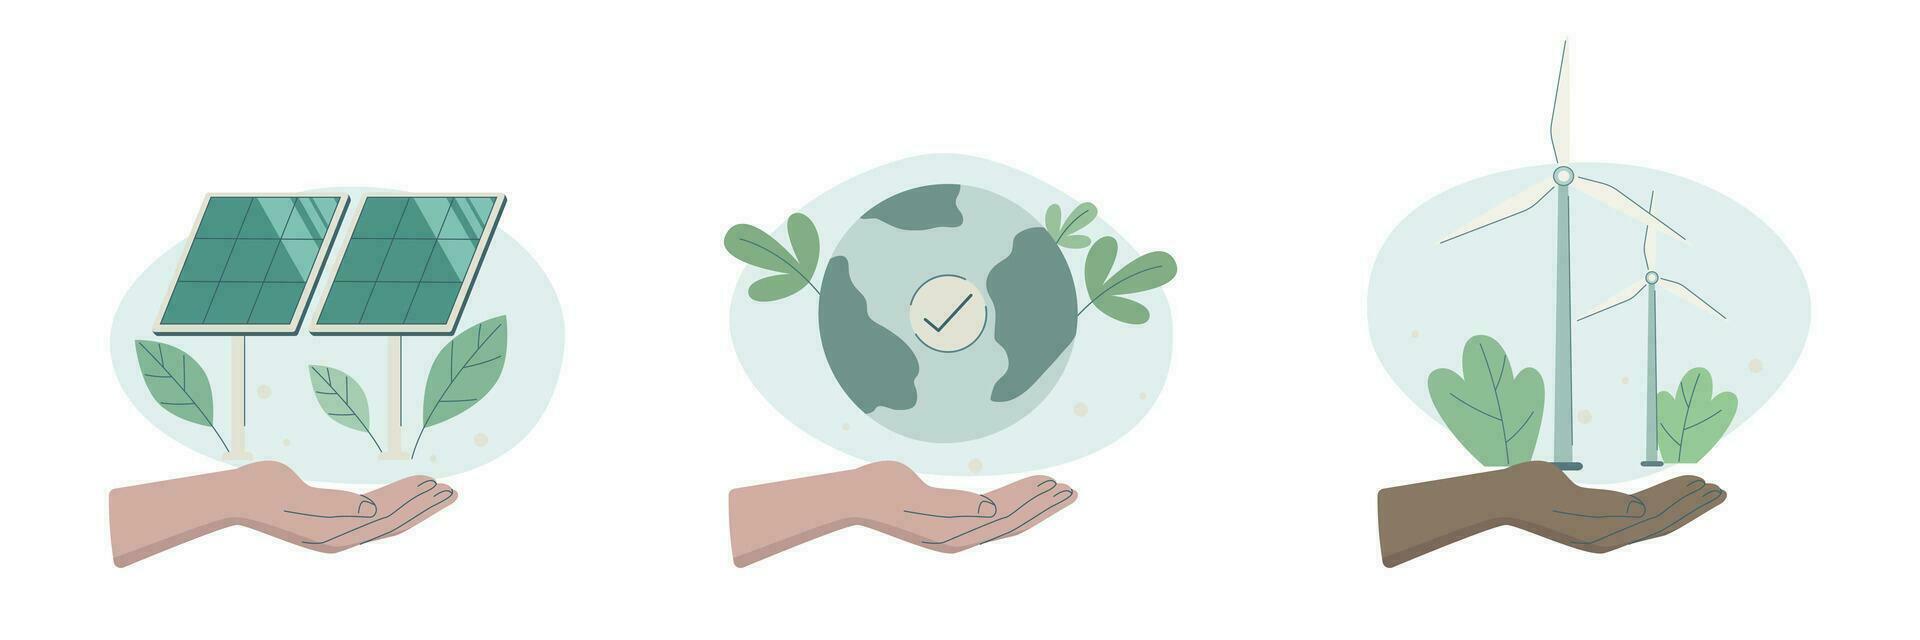 Öko freundlich nachhaltig, einstellen von Pflege Zeichen Hände halten Erde, Solar- Paneele und Wind Turbinen, Erhaltung von Ökologie von Planet, vektor